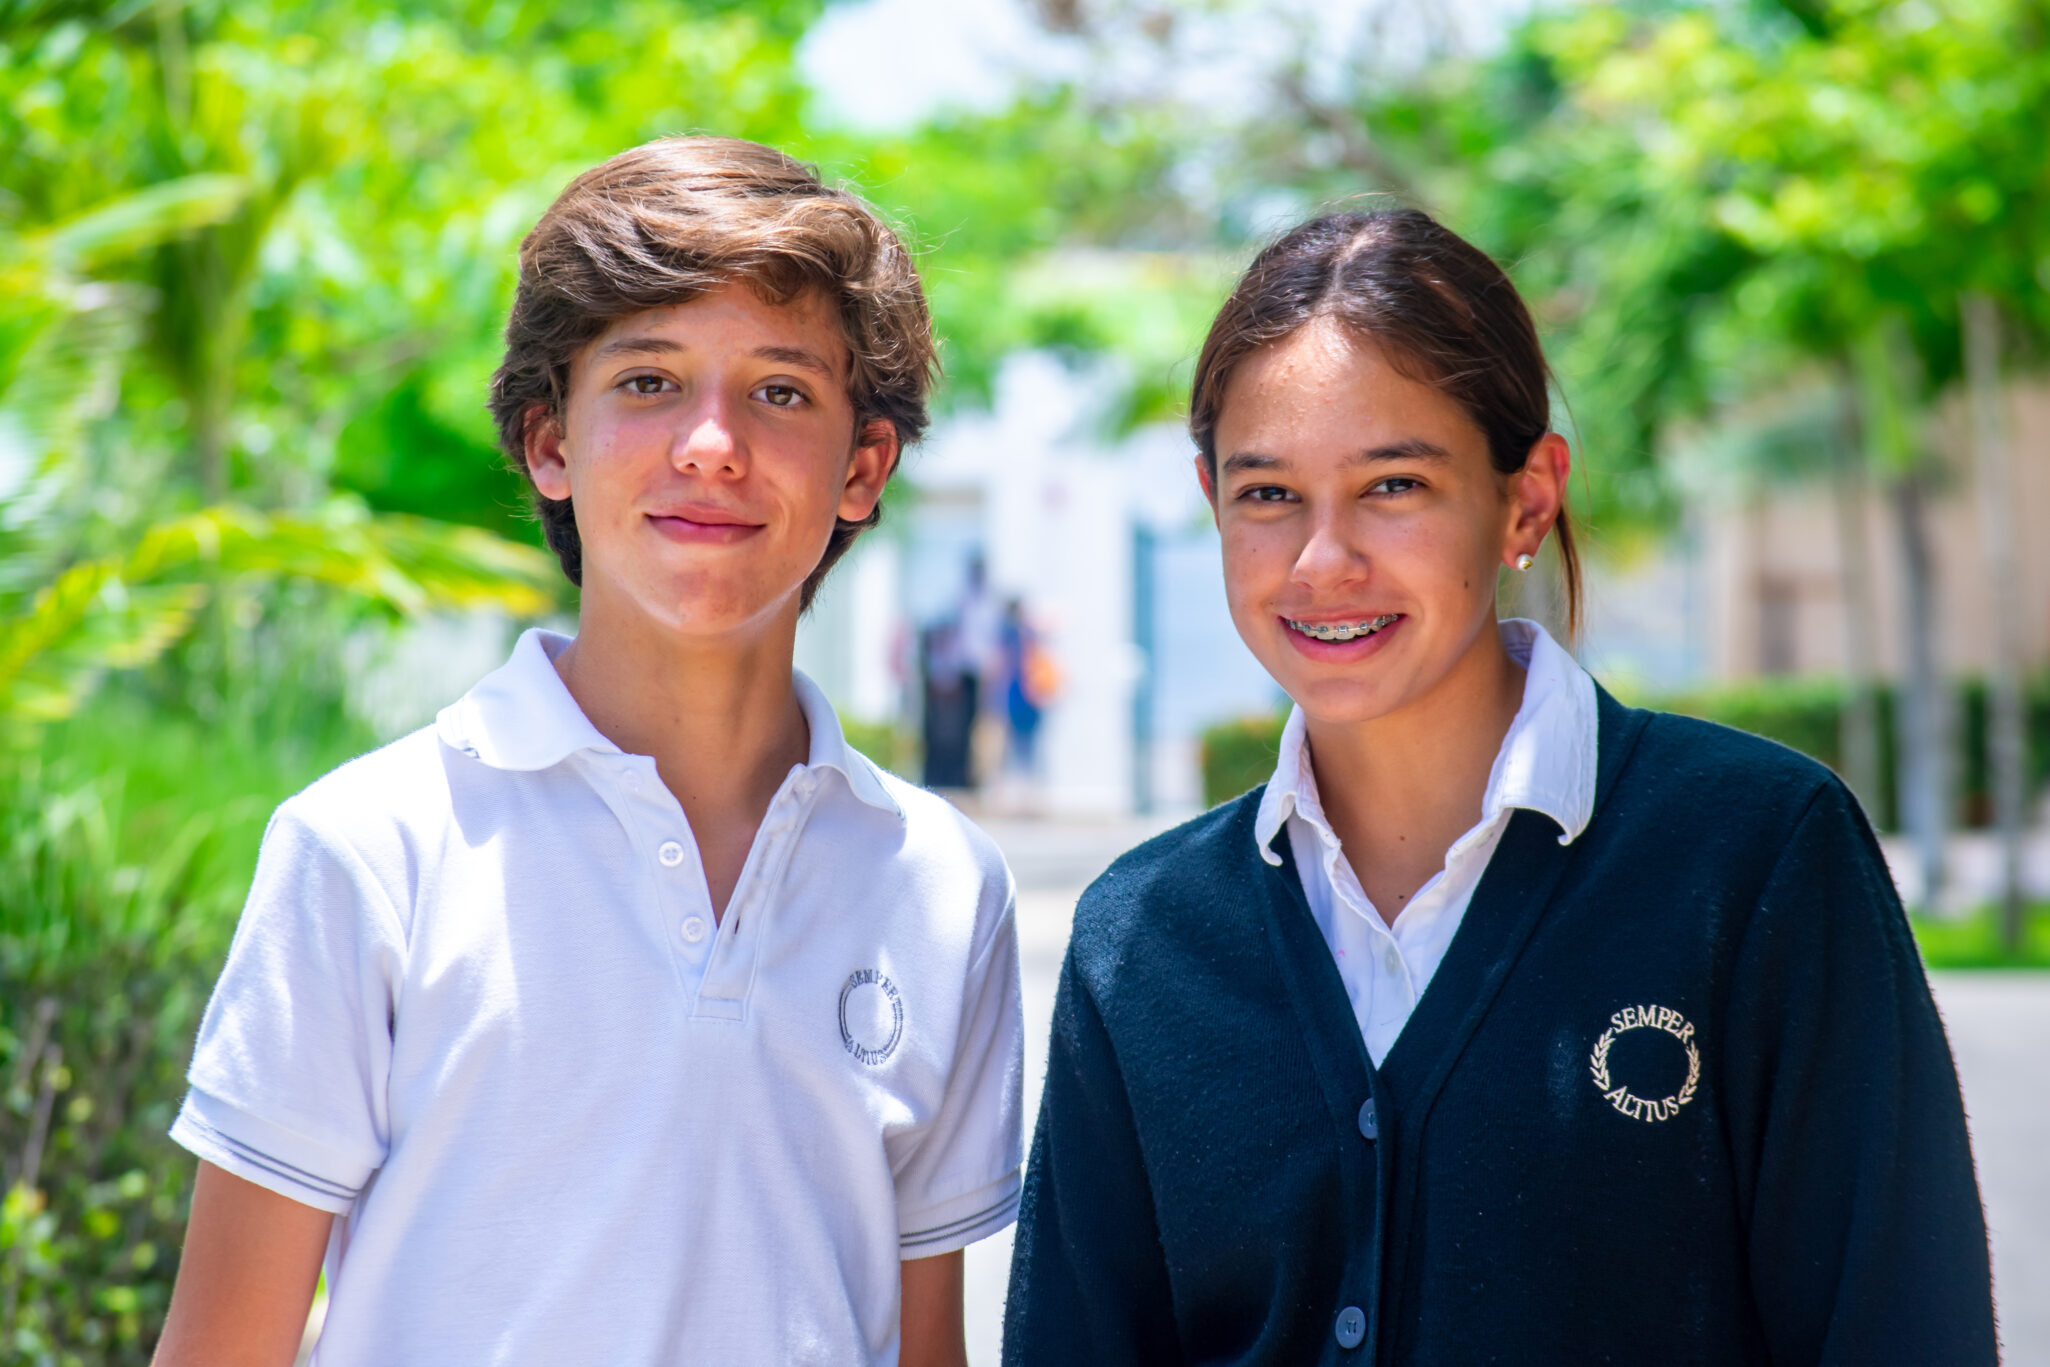 Alumnos de secundaria Cumbres Veracruz